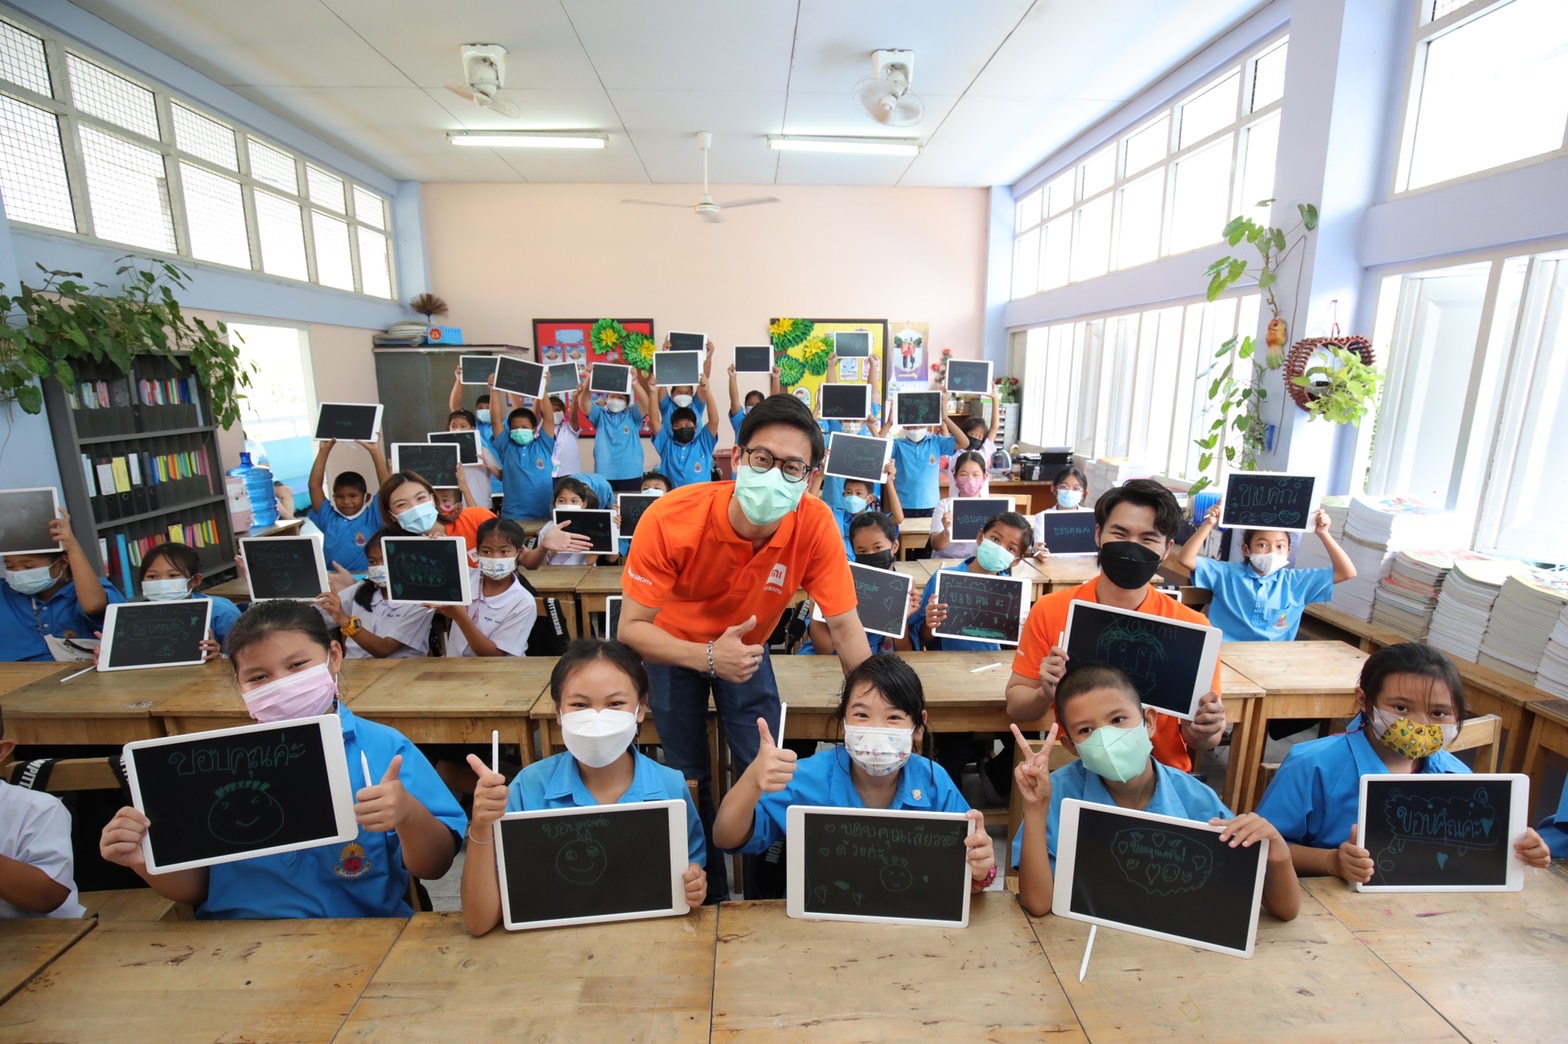 เสียวหมี่สนับสนุนด้านการศึกษาและเทคโนโลยีแก่เยาวชนไทย  มอบกระดานแท็บเล็ตวาดภาพหน้าจอแอลซีดีและอุปกรณ์การศึกษา จำนวน 300 ชุด  ในโครงการร้อยพลังการศึกษา มูลนิธิยุวพัฒน์